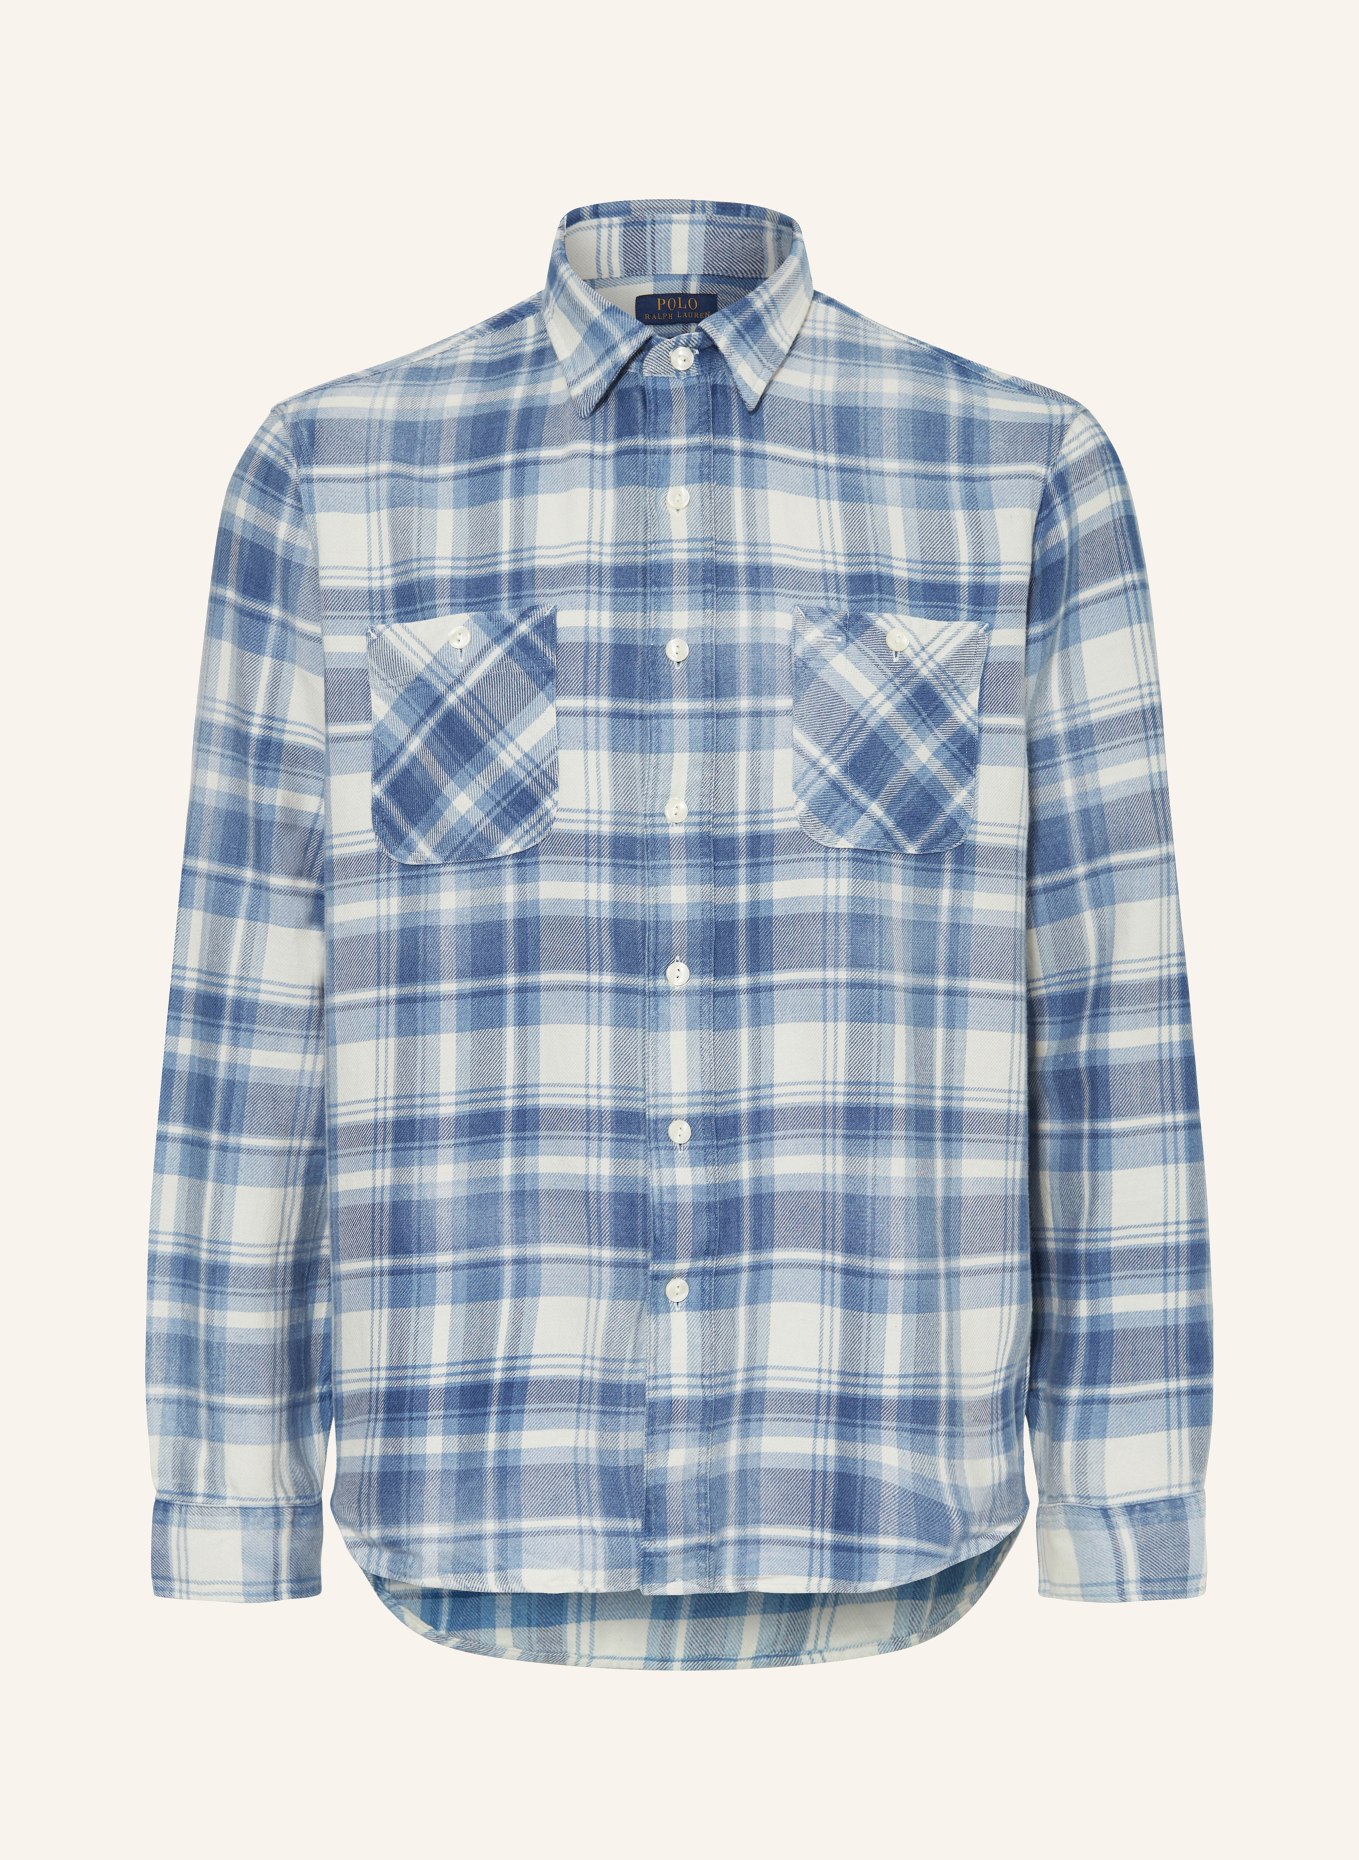 POLO RALPH LAUREN Flannel shirt classic fit, Color: WHITE/ BLUE/ LIGHT BLUE (Image 1)